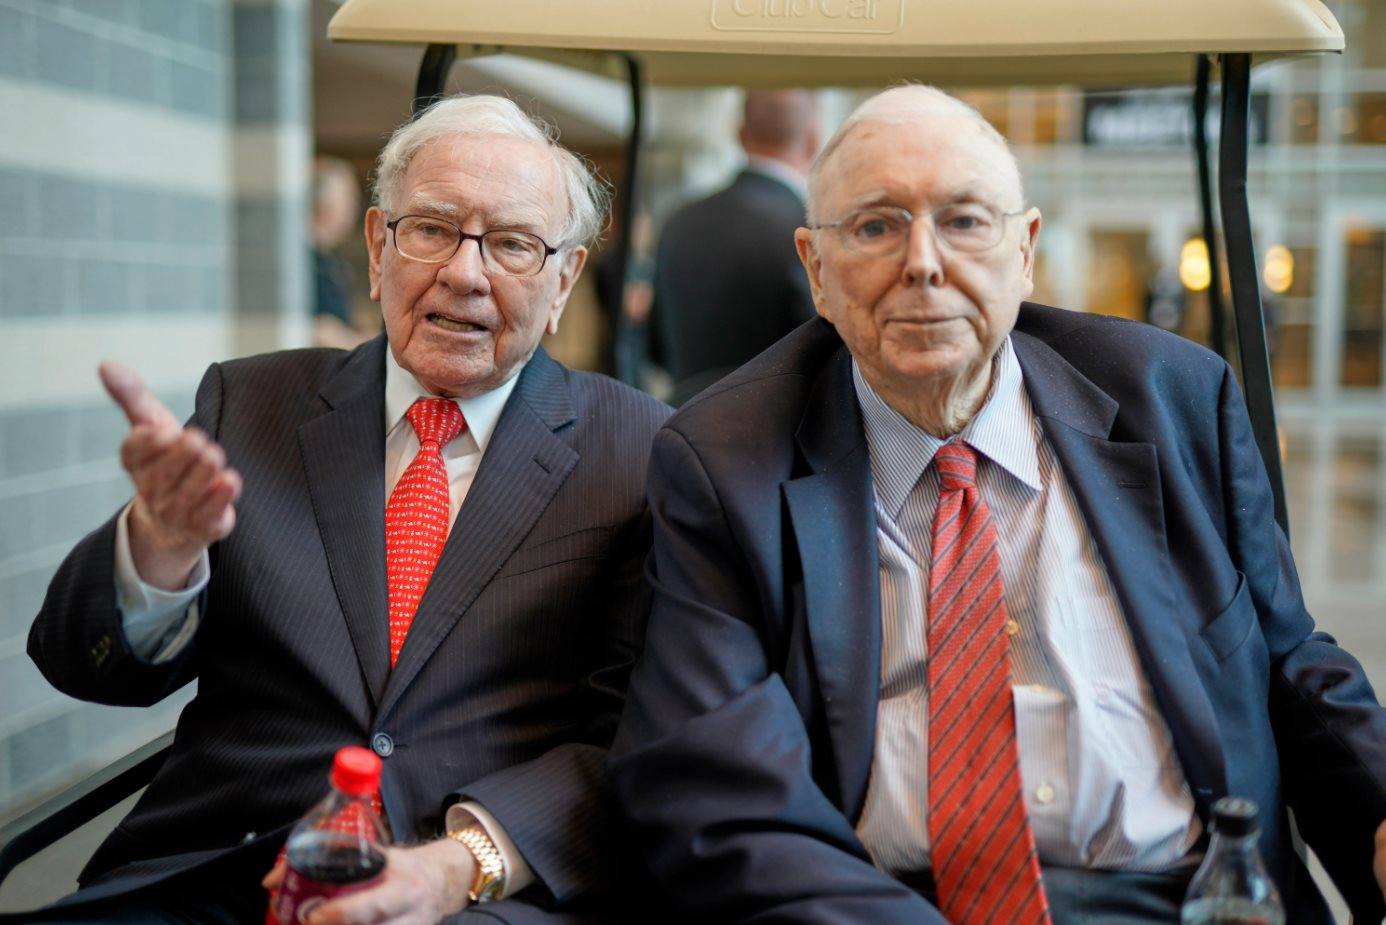 Câu chuyện 'già mà vẫn dẻo dai' của Warren Buffett: Kỷ nguyên của các CEO 100 tuổi vui tính và không chịu ‘nhường ngôi’ - Ảnh 1.